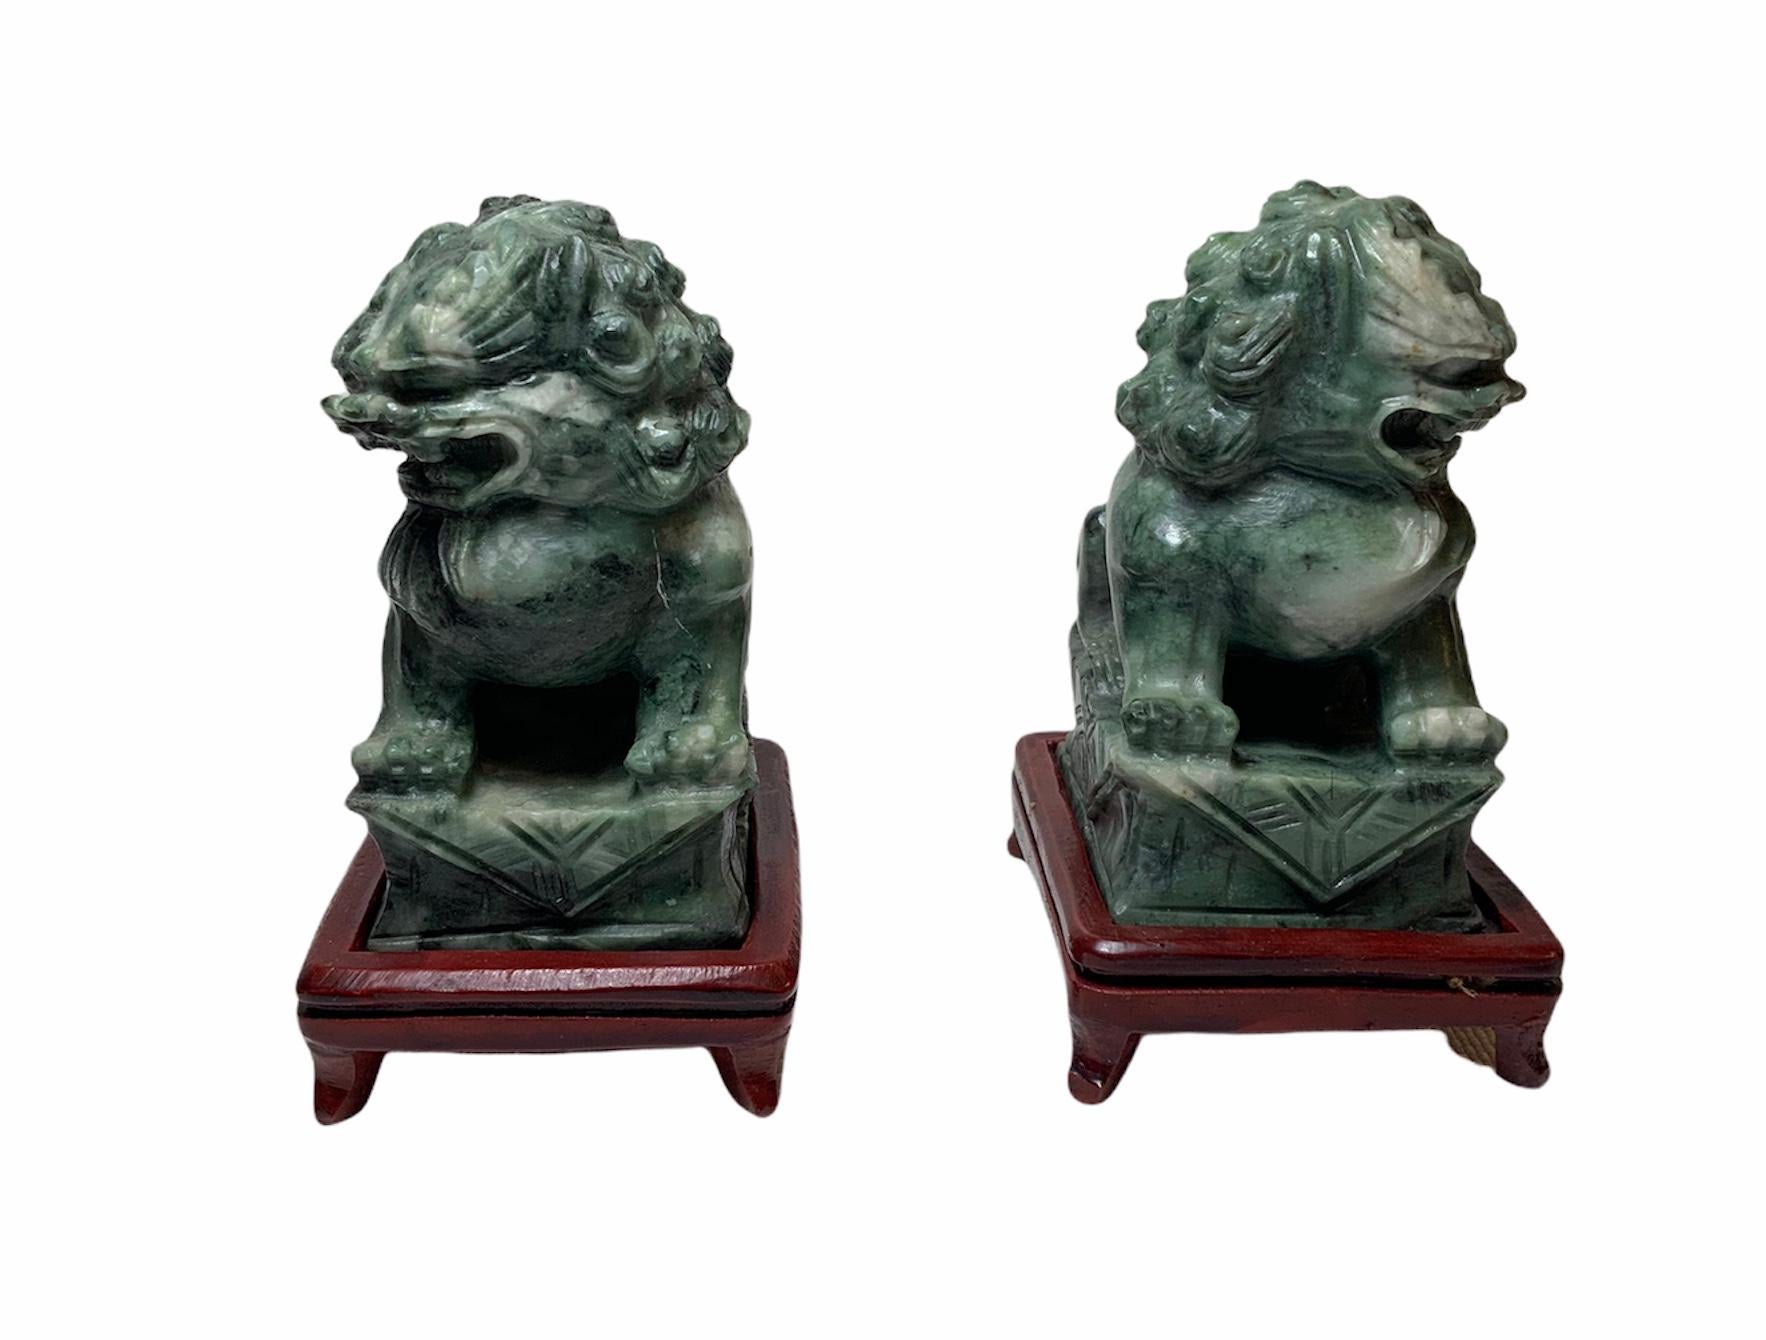 Il s'agit d'une paire de sculptures/figurines chinoises en pierre verte, sculptées à la main, de type Foo-Dog. Ils représentent un couple de chiens-fous assis dans une base de forme rectangulaire avec un tapis. Ils sont soutenus par une base en bois